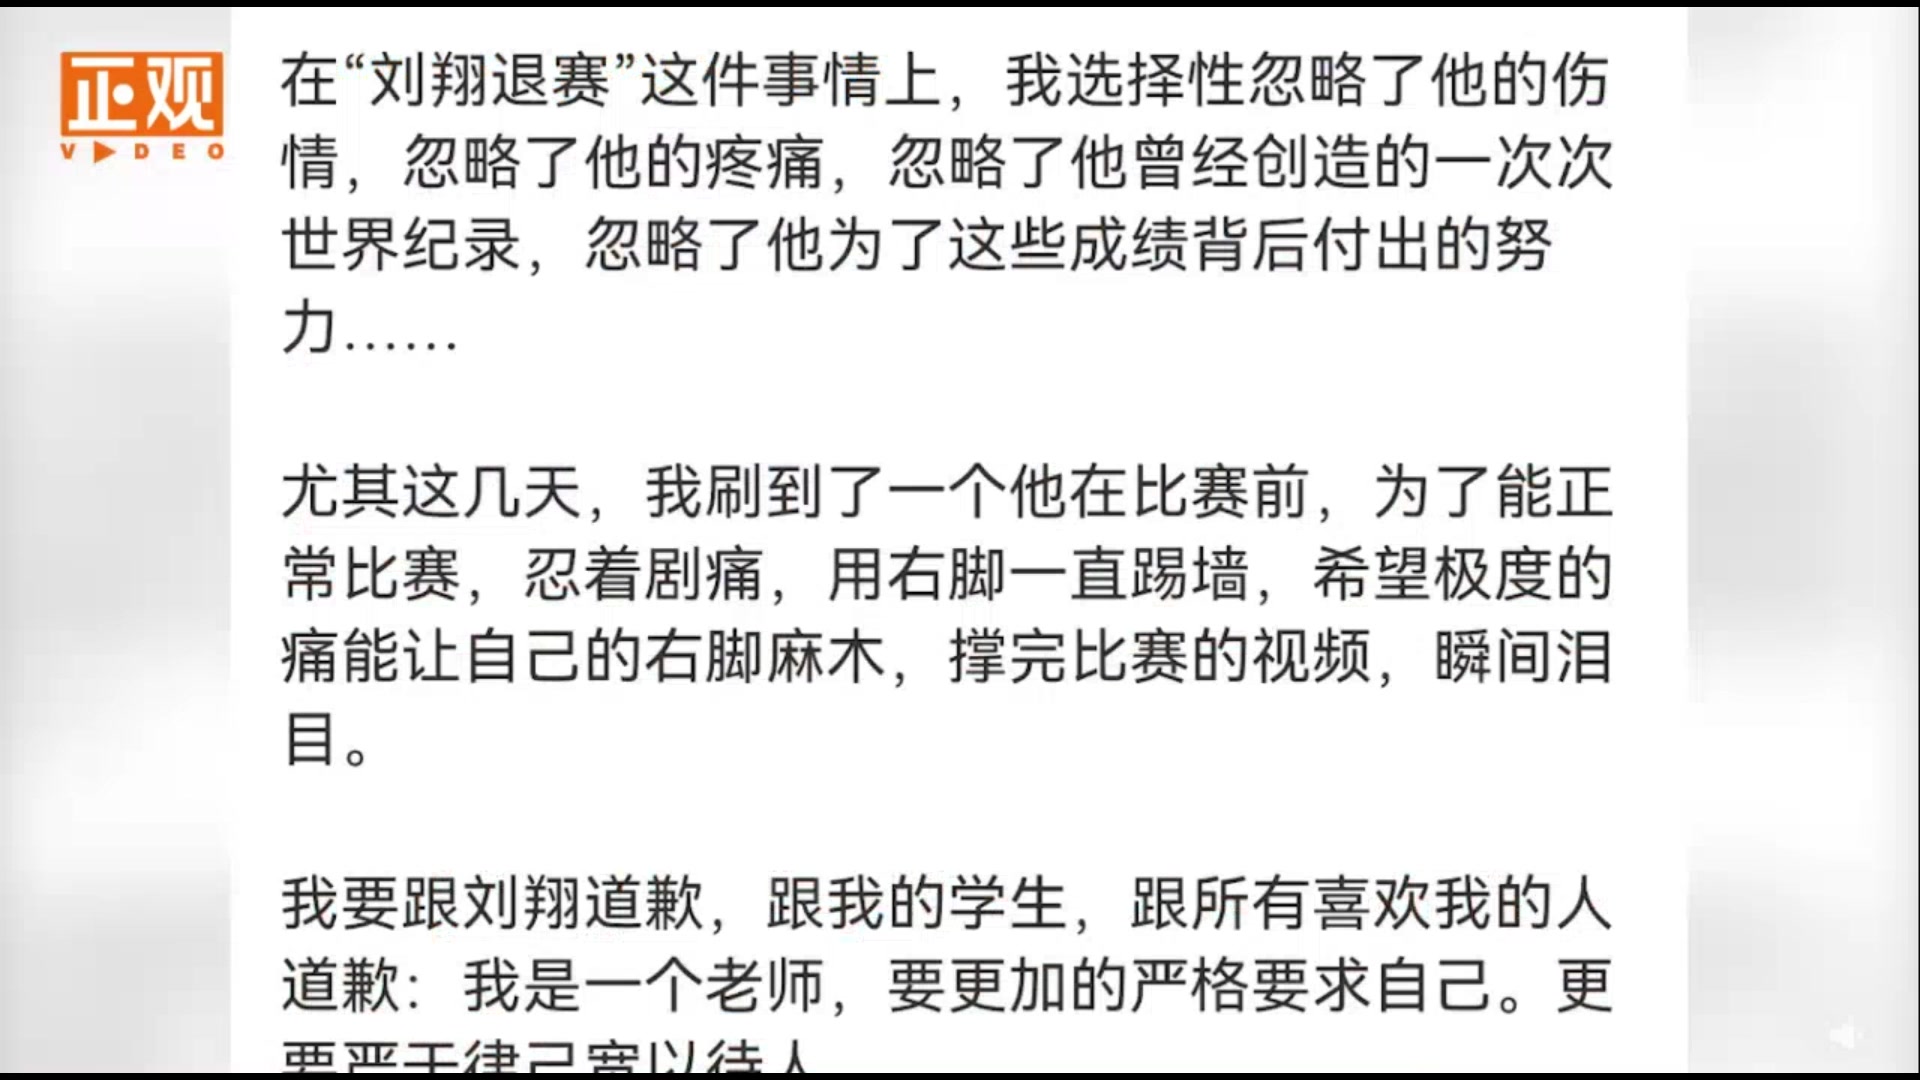 某考研英语老师网课中骂刘翔, “我很看不起这种人”引发关注! 后又被网友扒出辱骂过烈士!